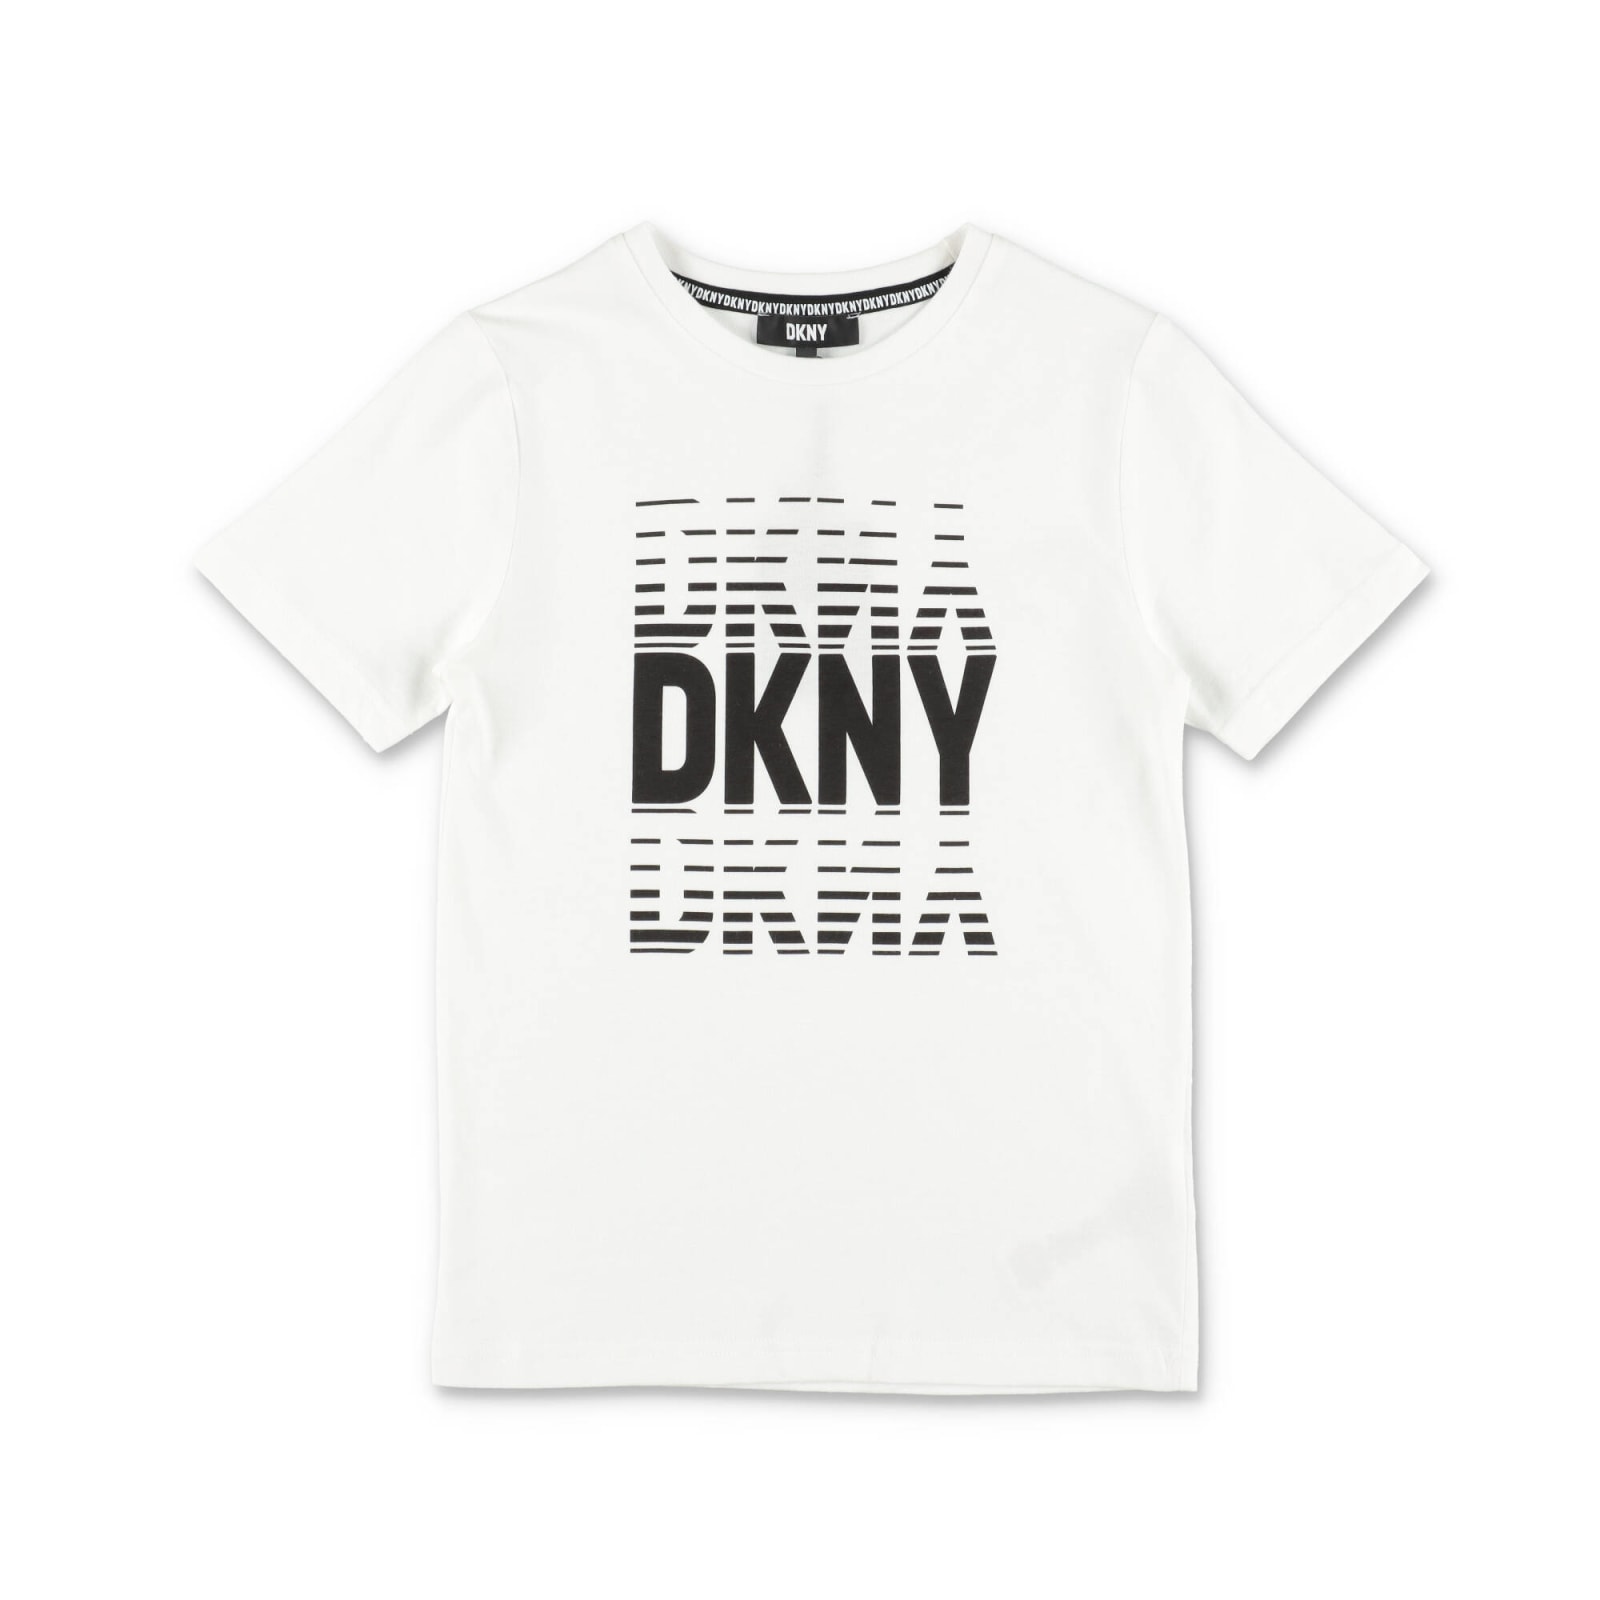 Dkny T-shirt Bianca In Jersey Di Cotone Bambino